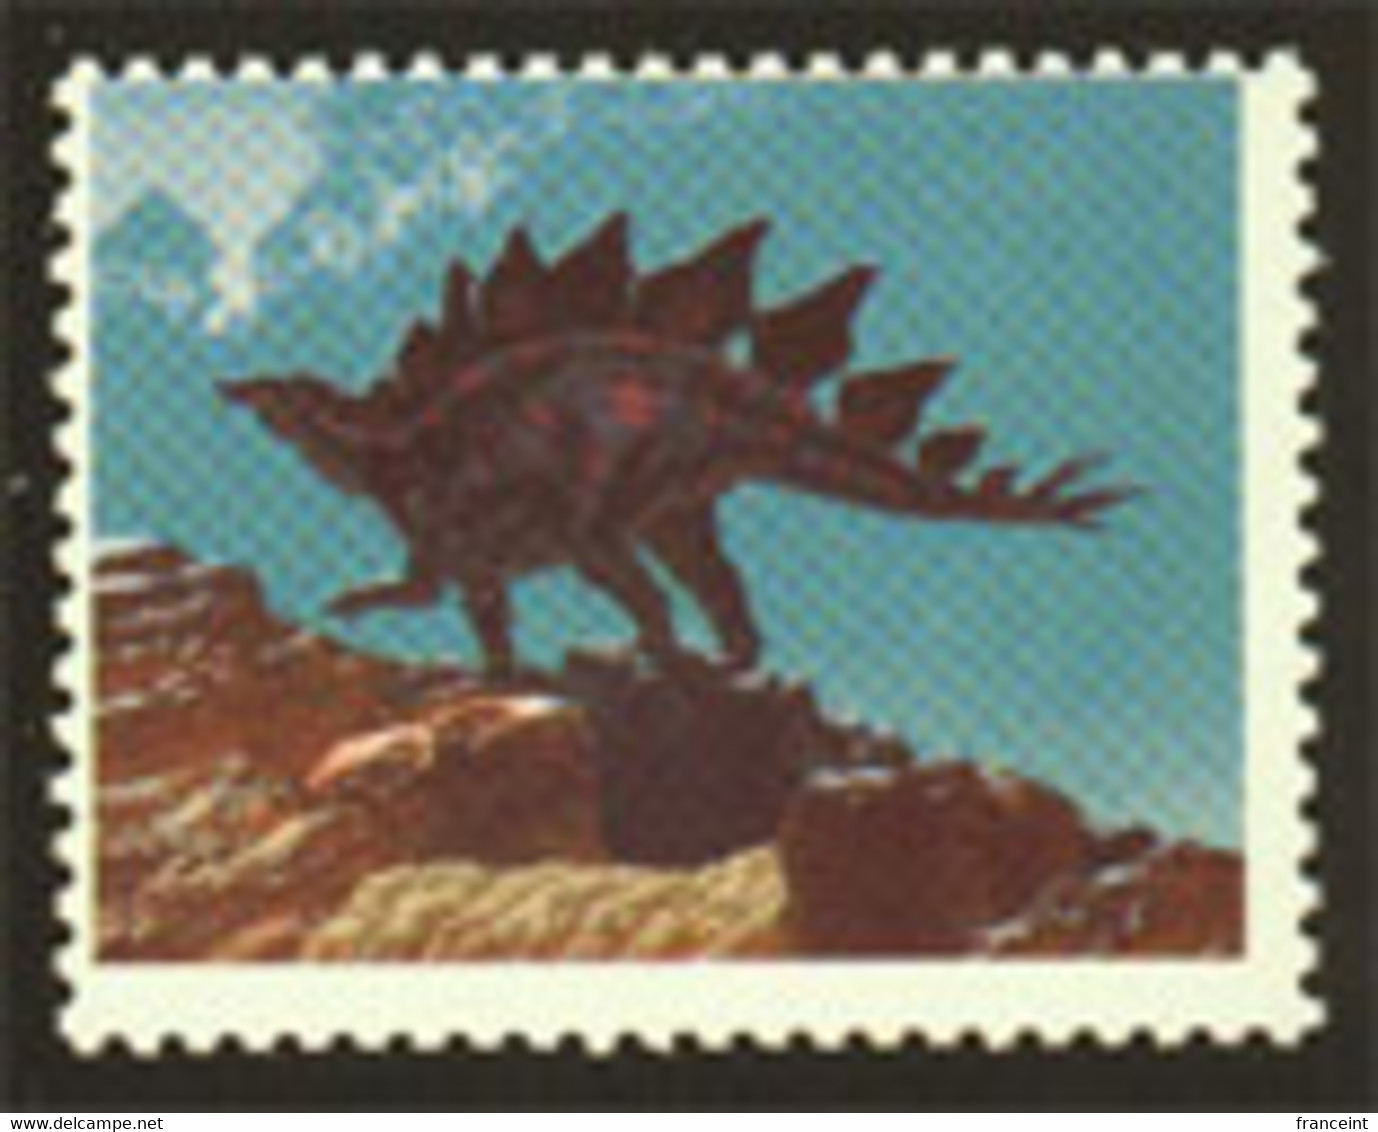 ETATS UNIS (1989a) Stégosaure. Scott No 2424. Superbe Variété: Sans La Couleur Noire. - Variedades, Errores & Curiosidades